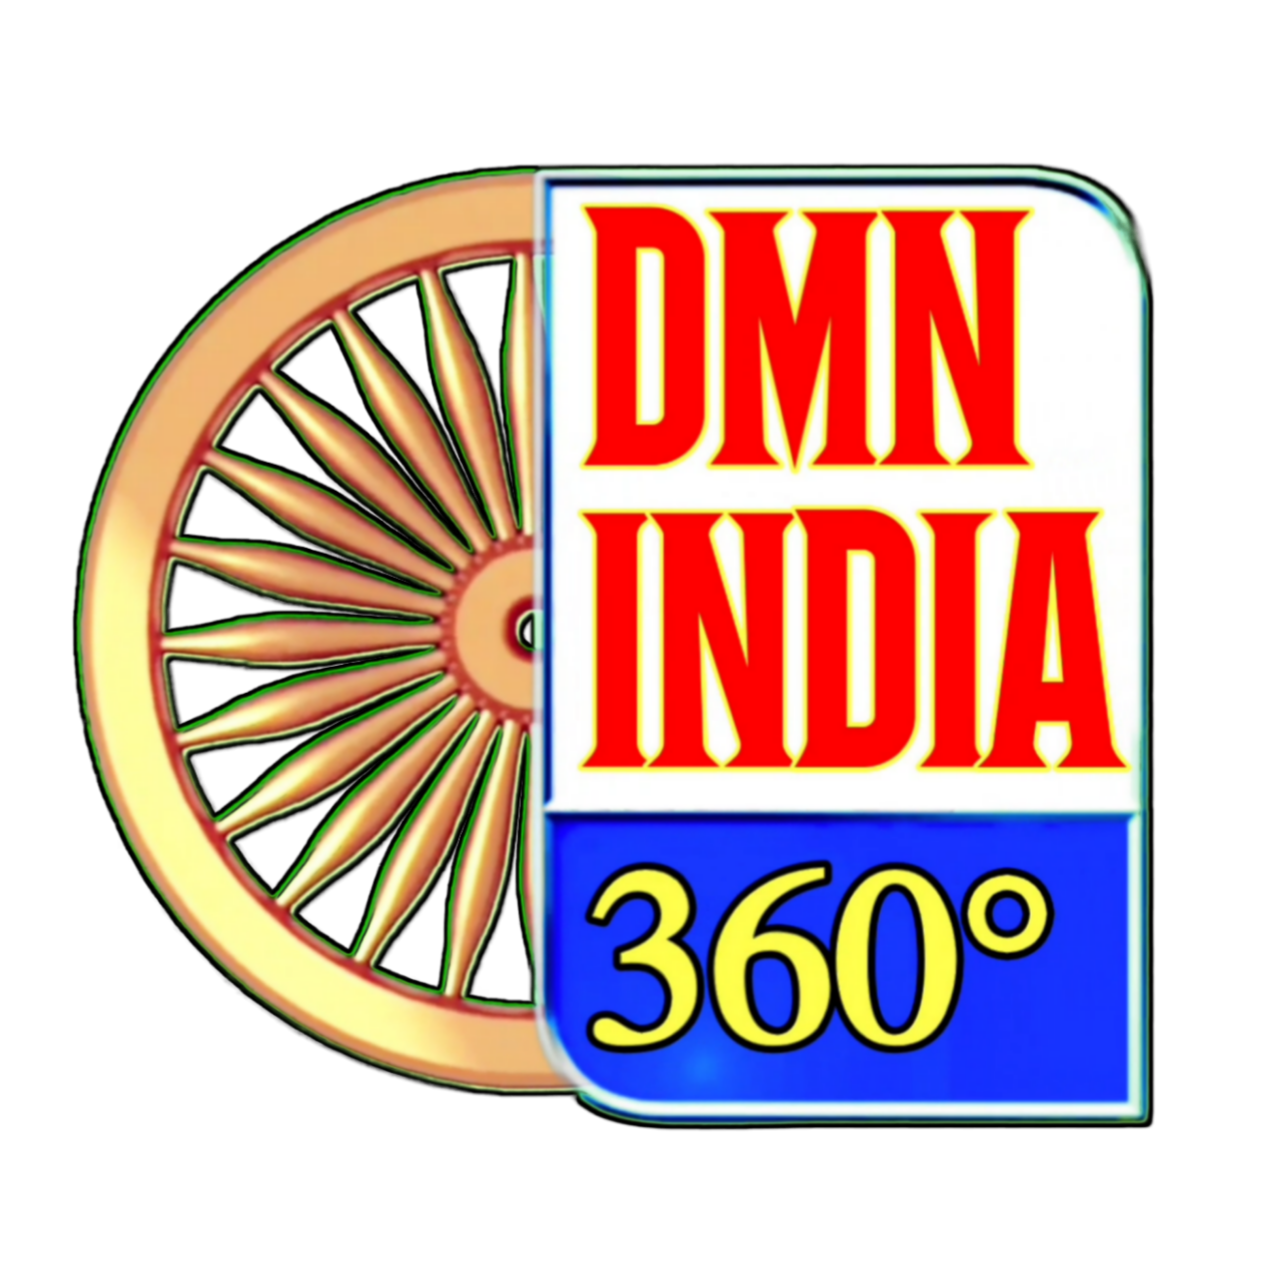 Dmn india 360